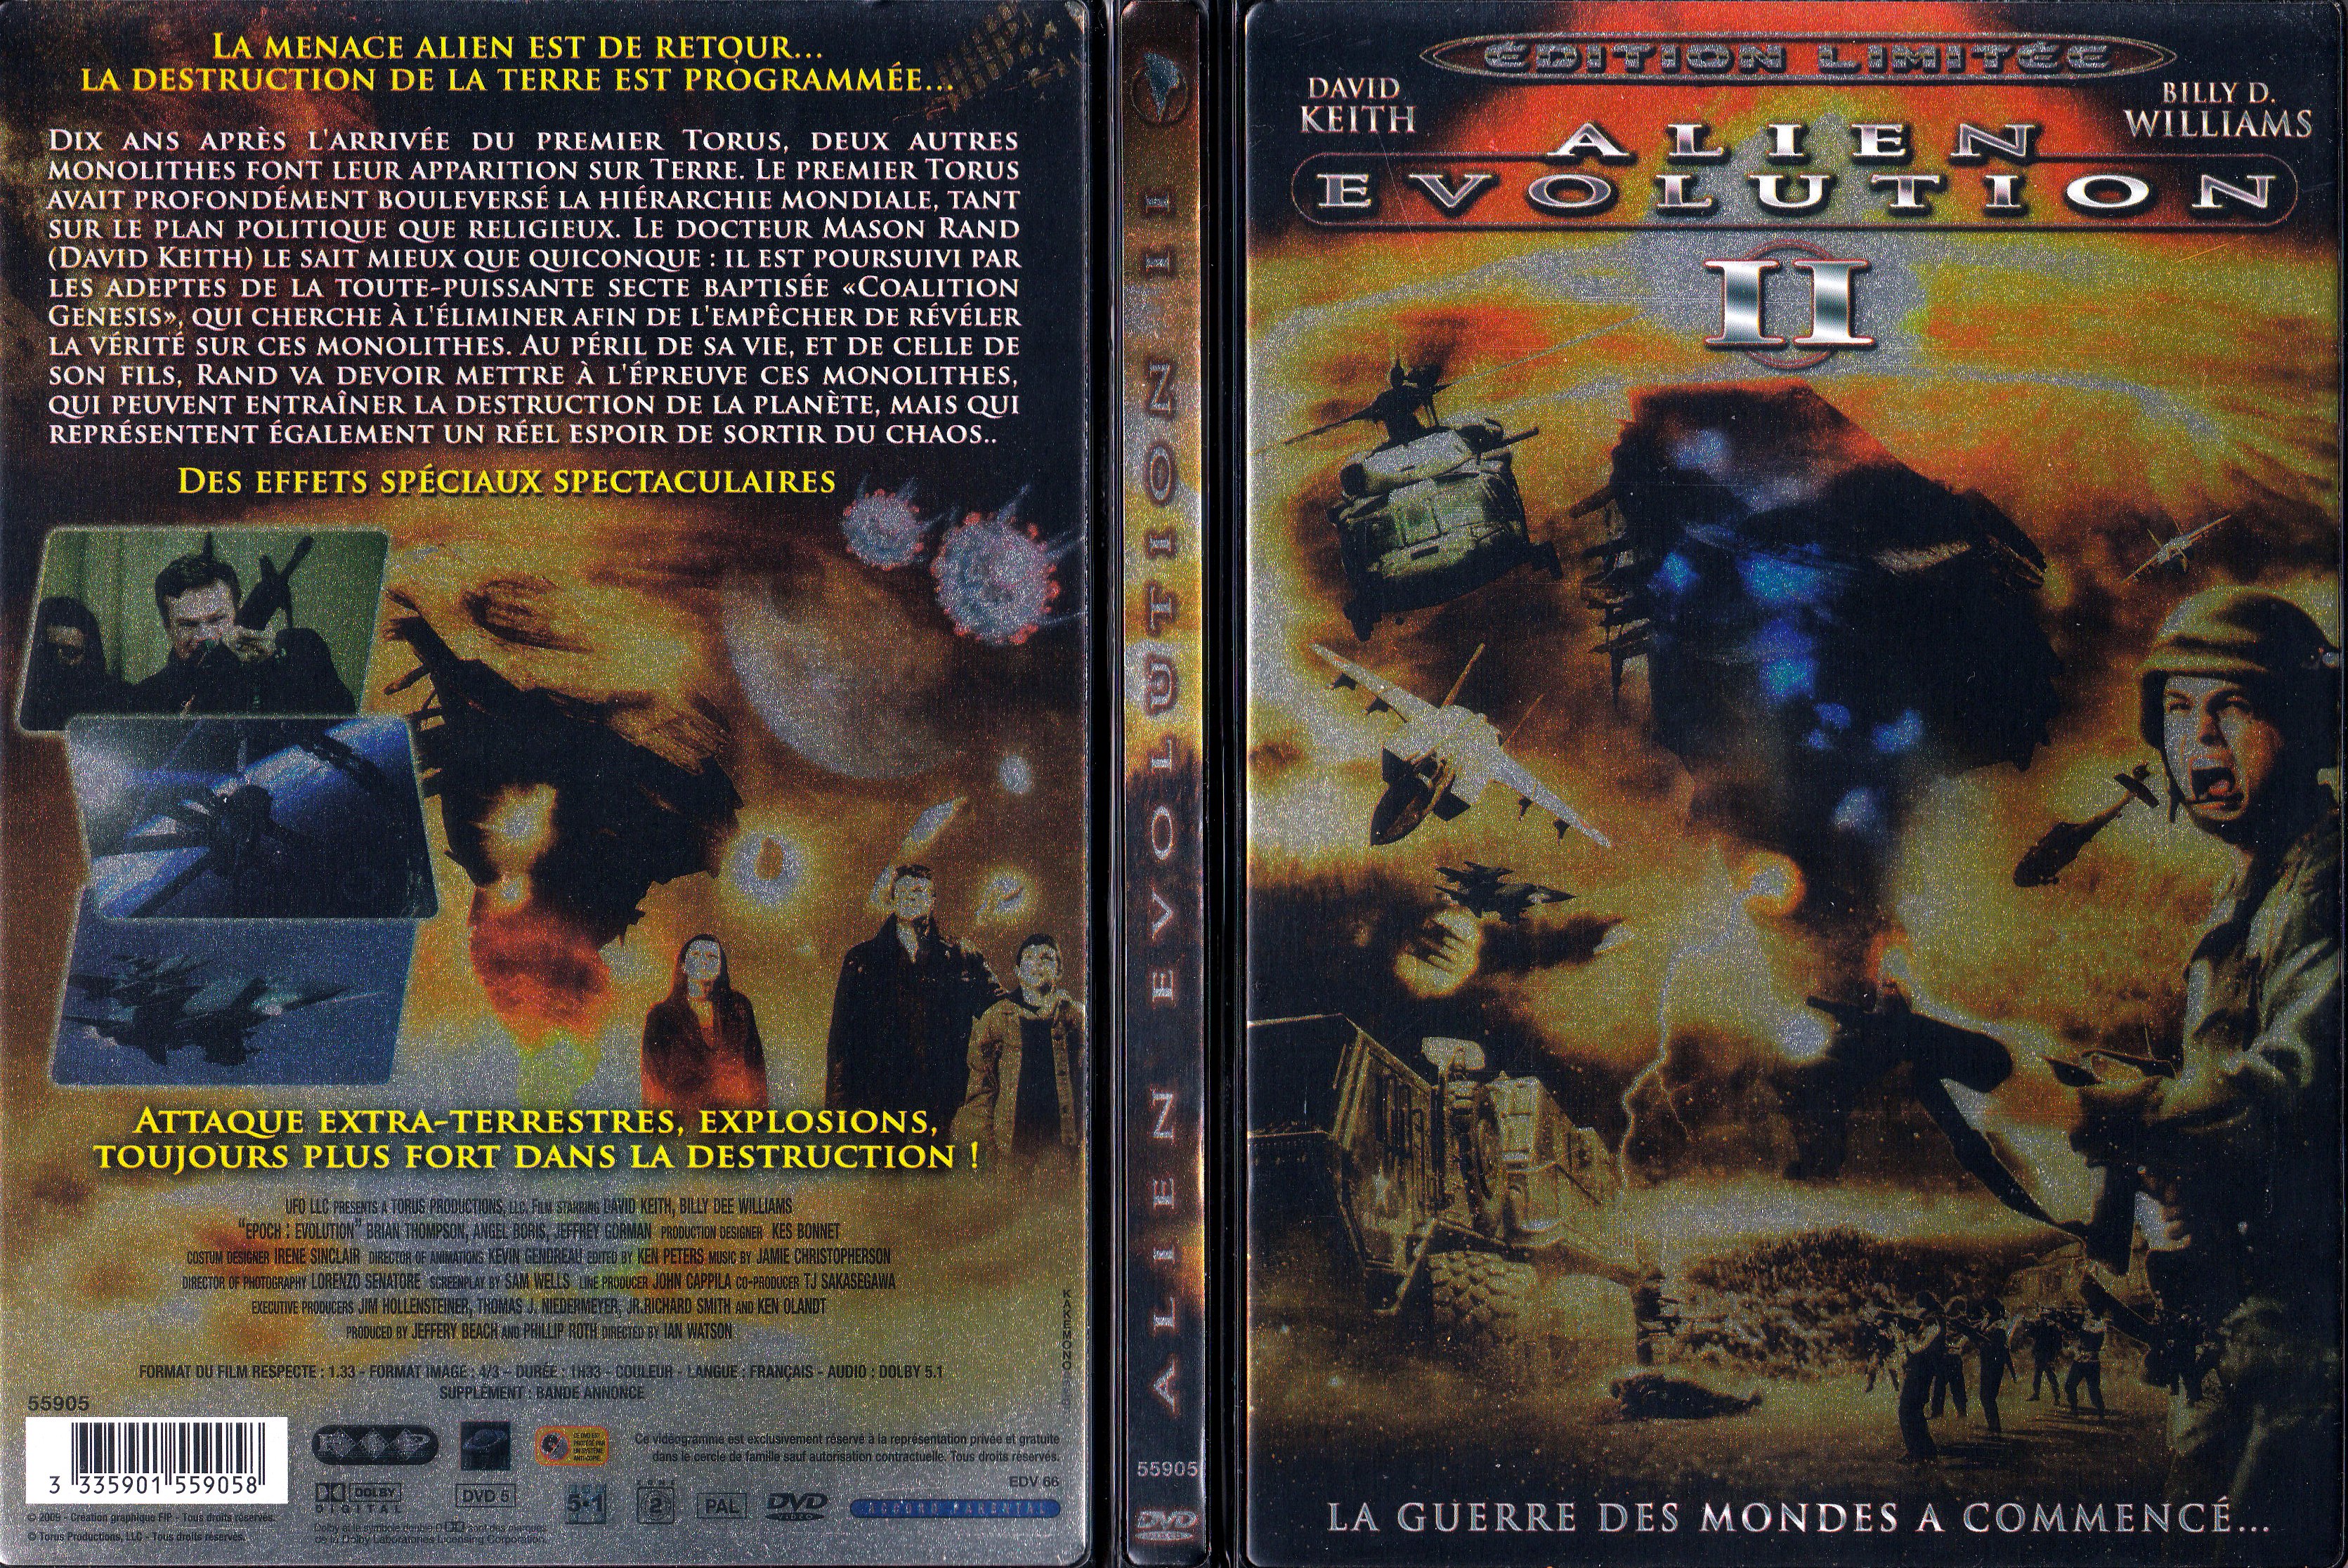 Jaquette DVD Alien volution II